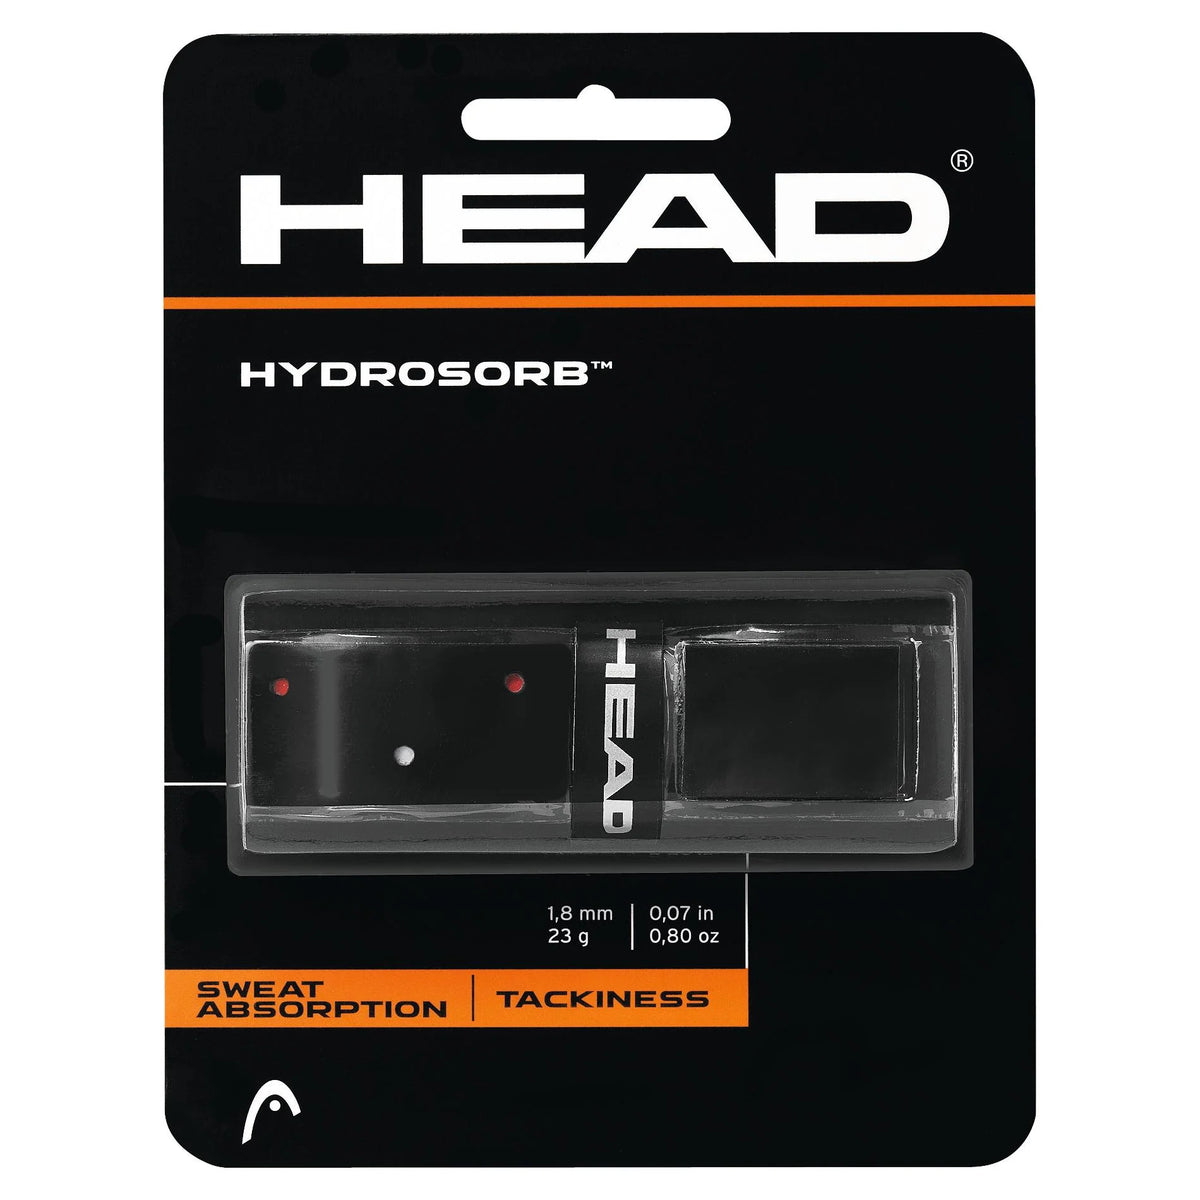 Head HydroSorb Grip 285014